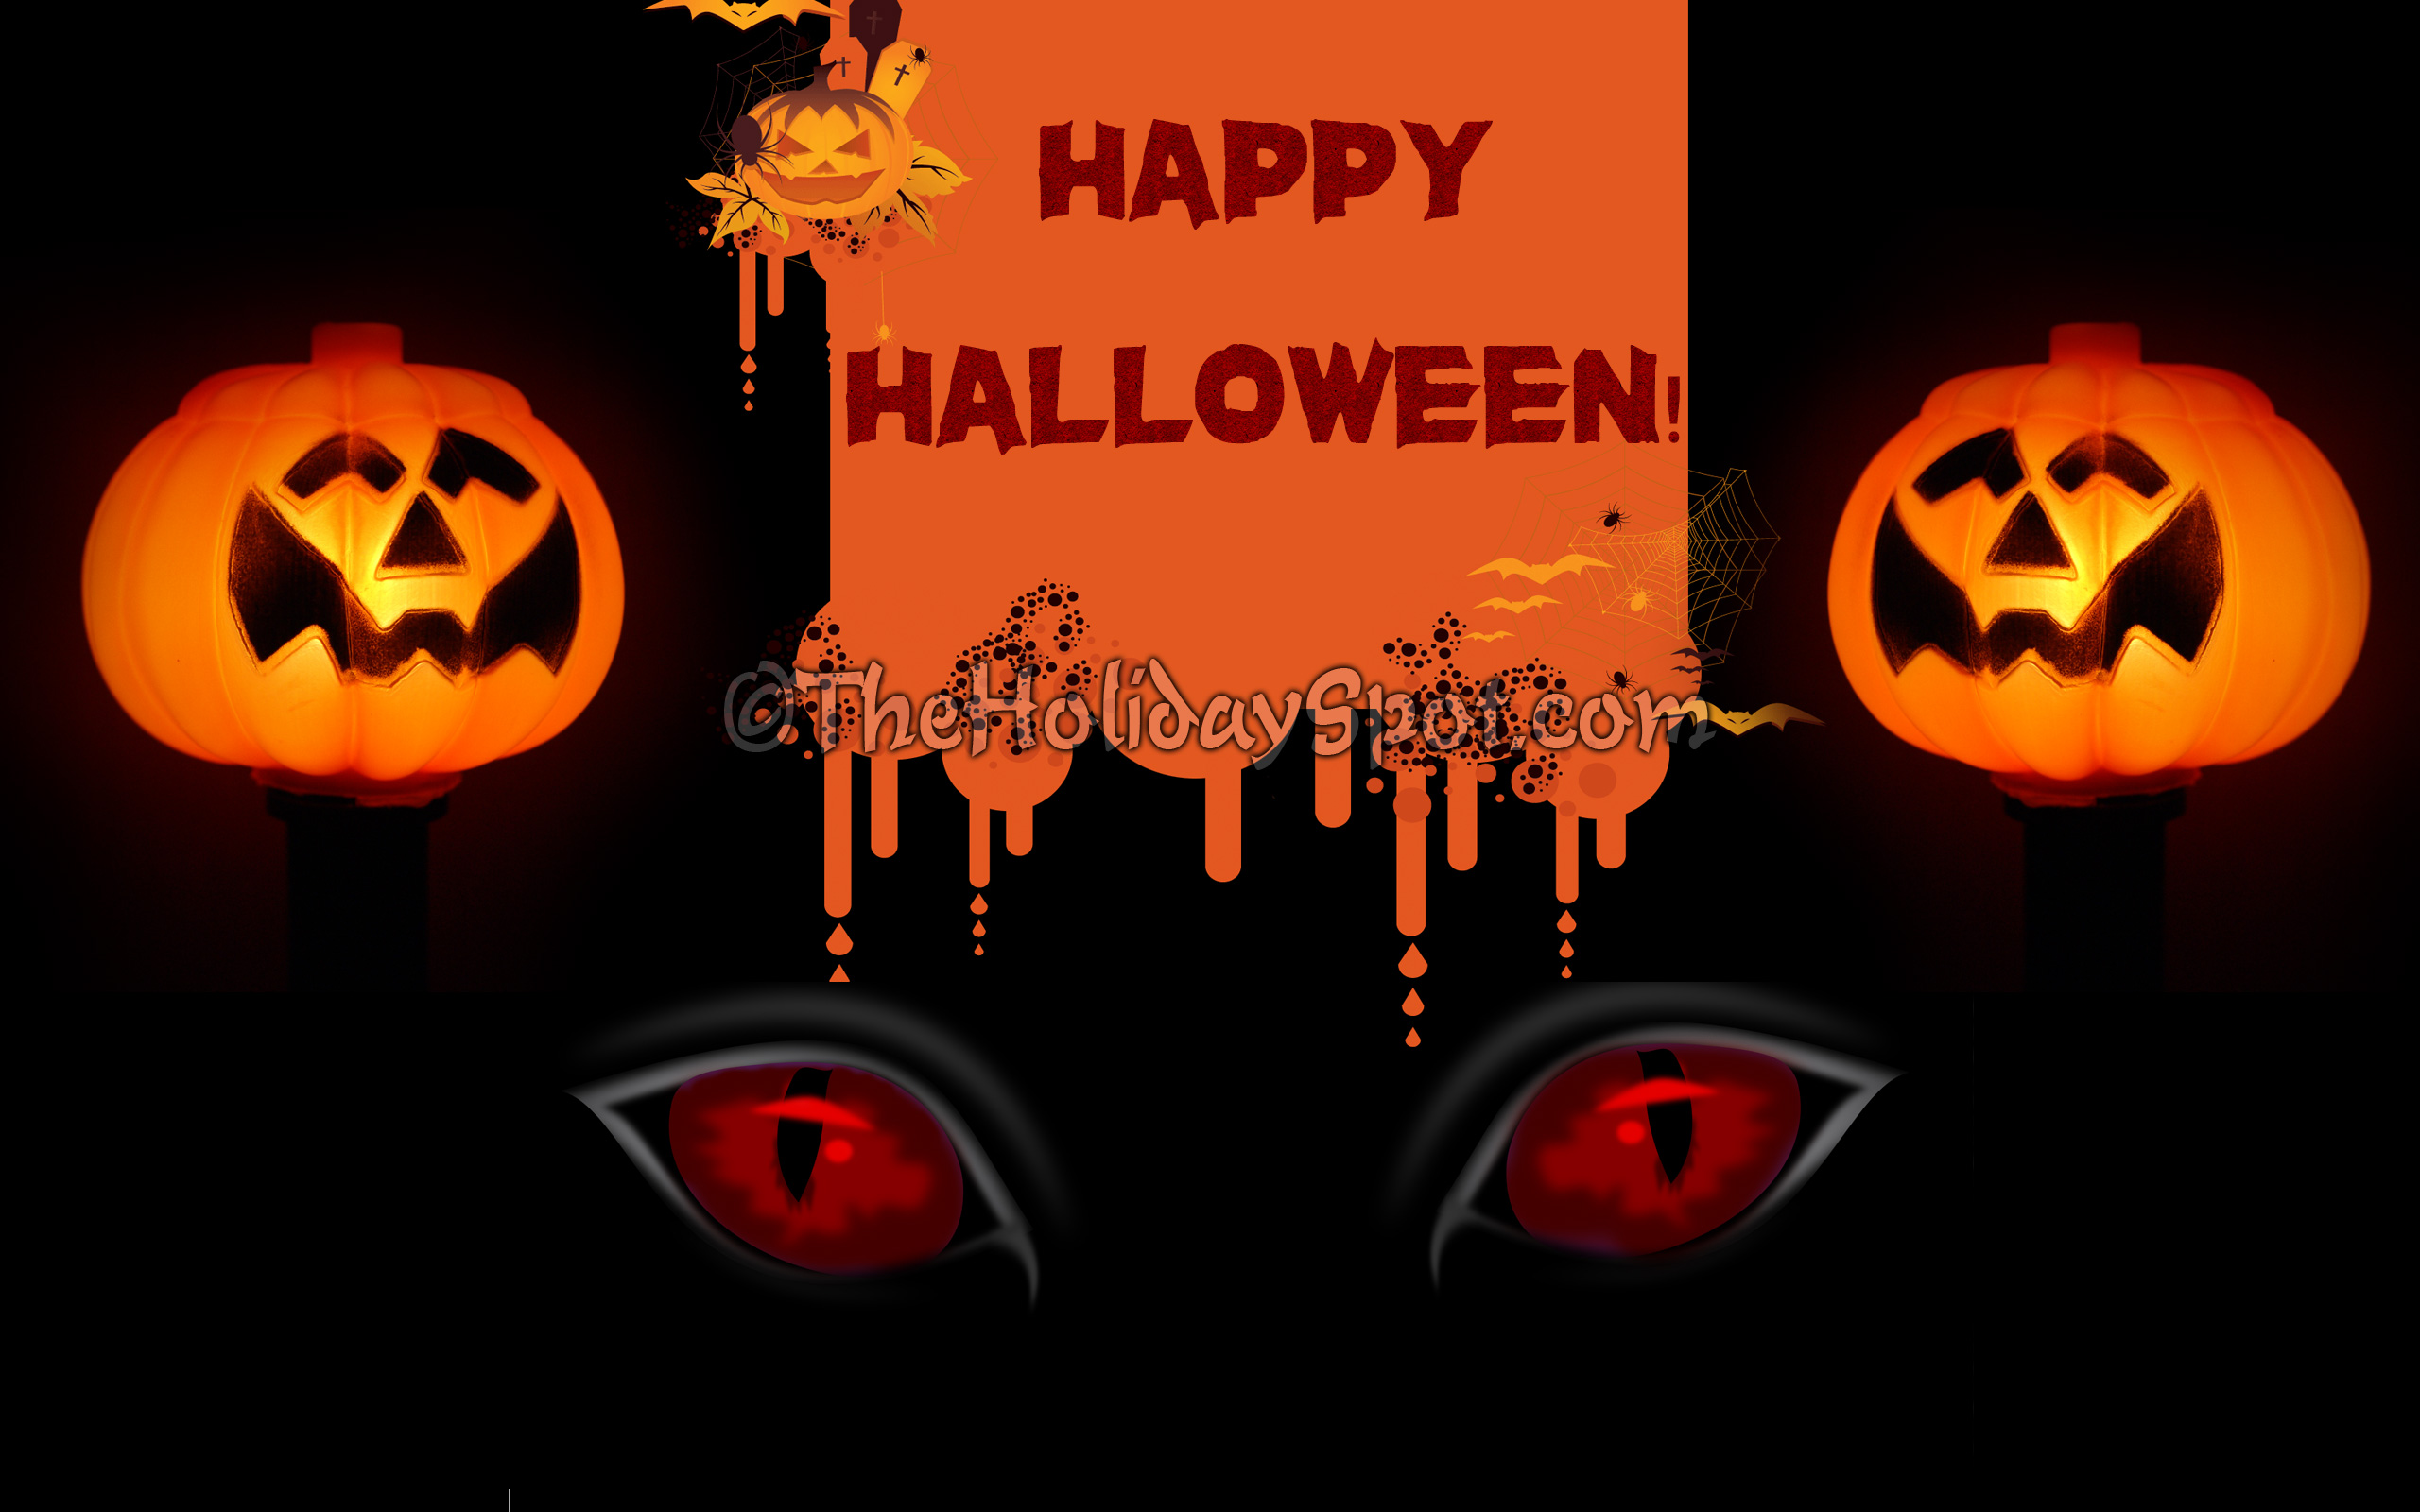 Halloween Wallpaper Hd Download Free Halloween Wallpaper And Backgrounds Best Happy Halloween Images